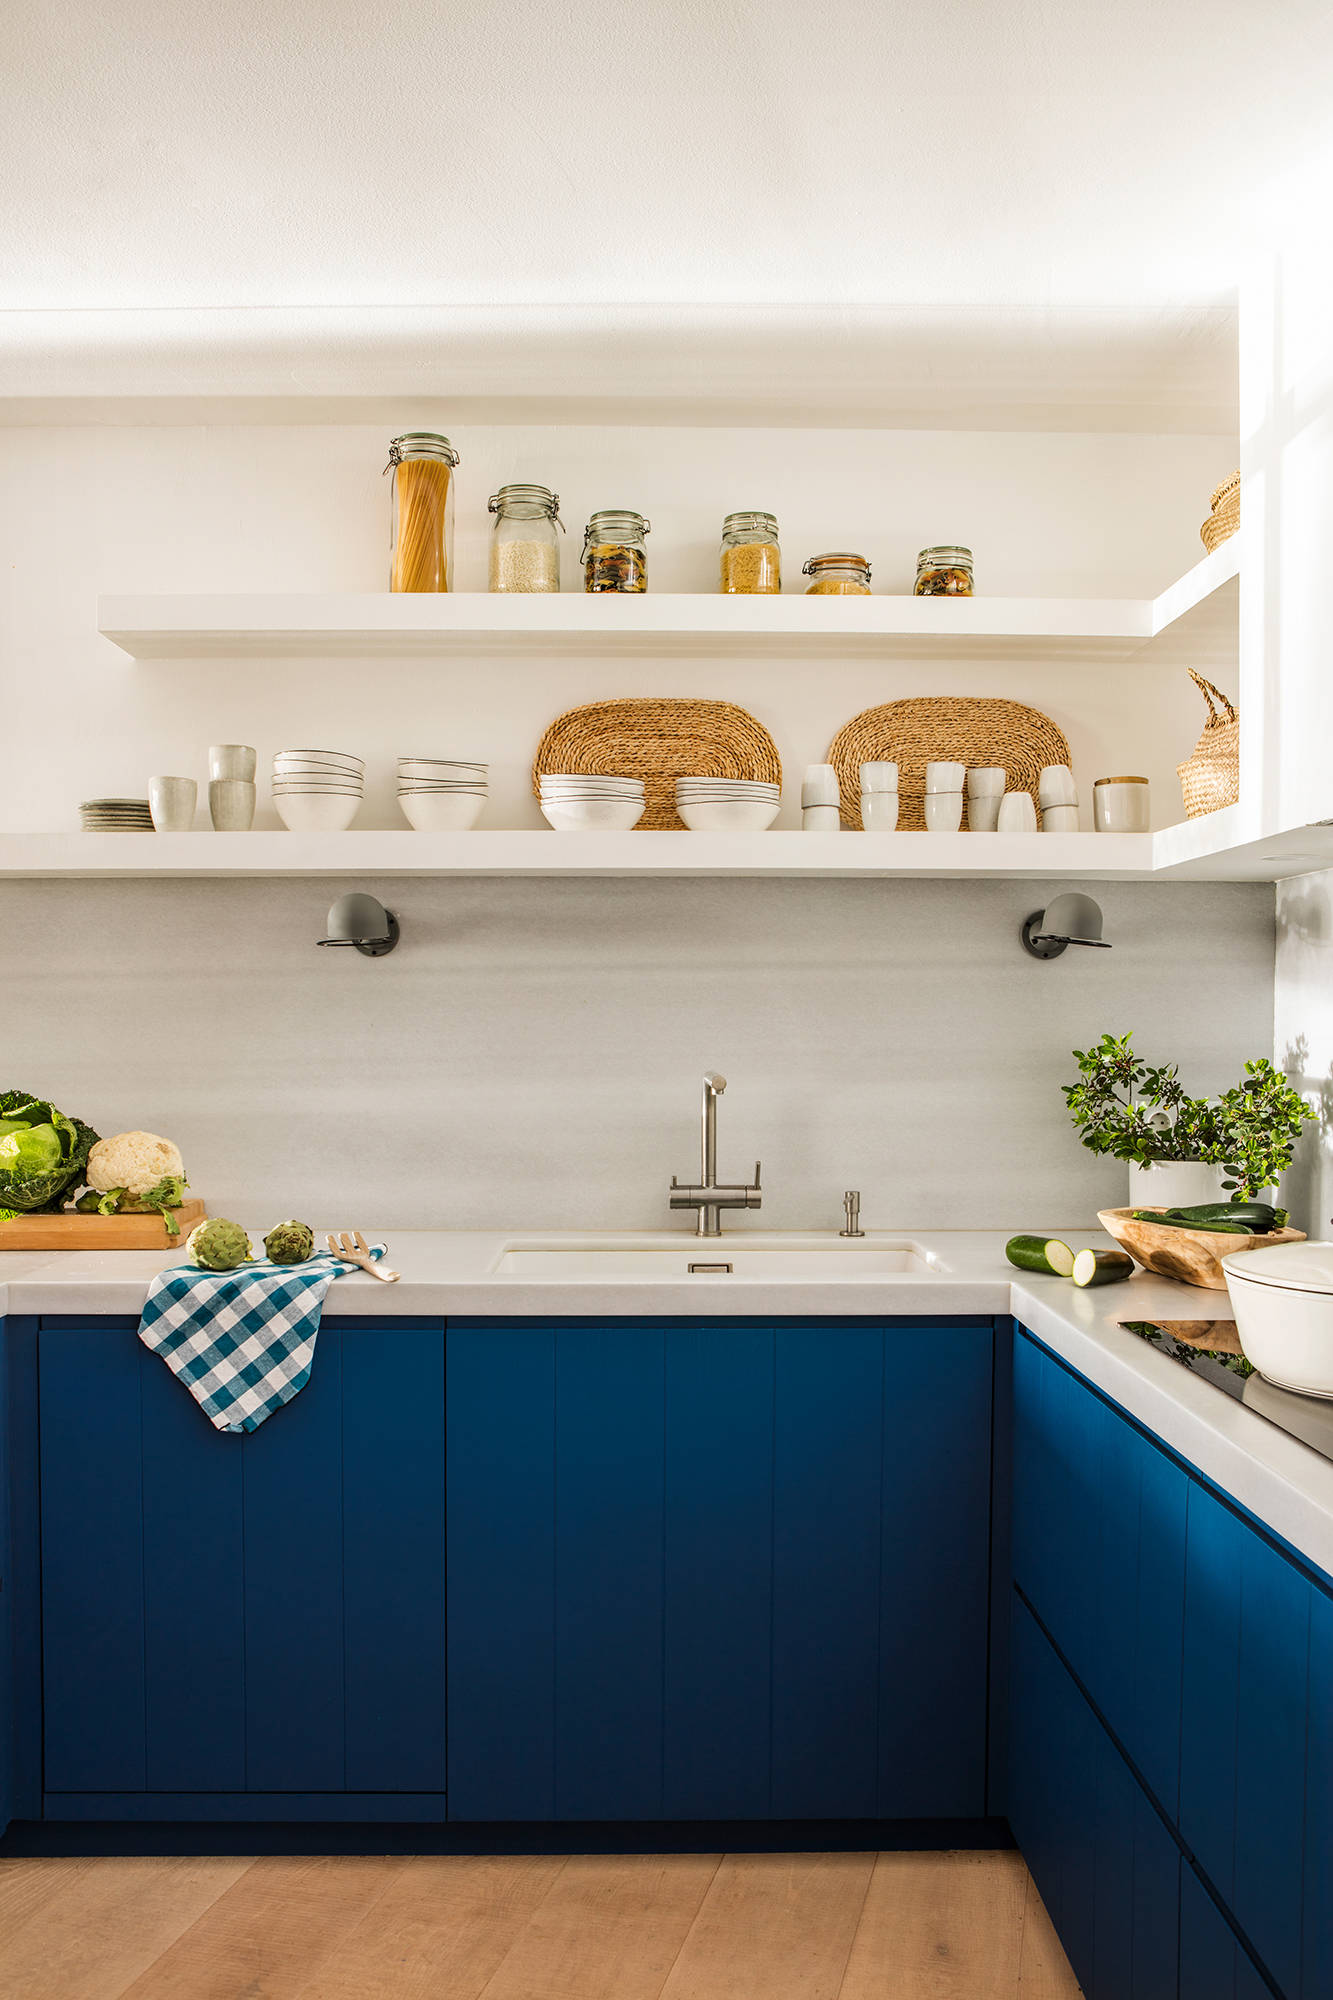 Cocina con muebles de cocina pintados en azul.